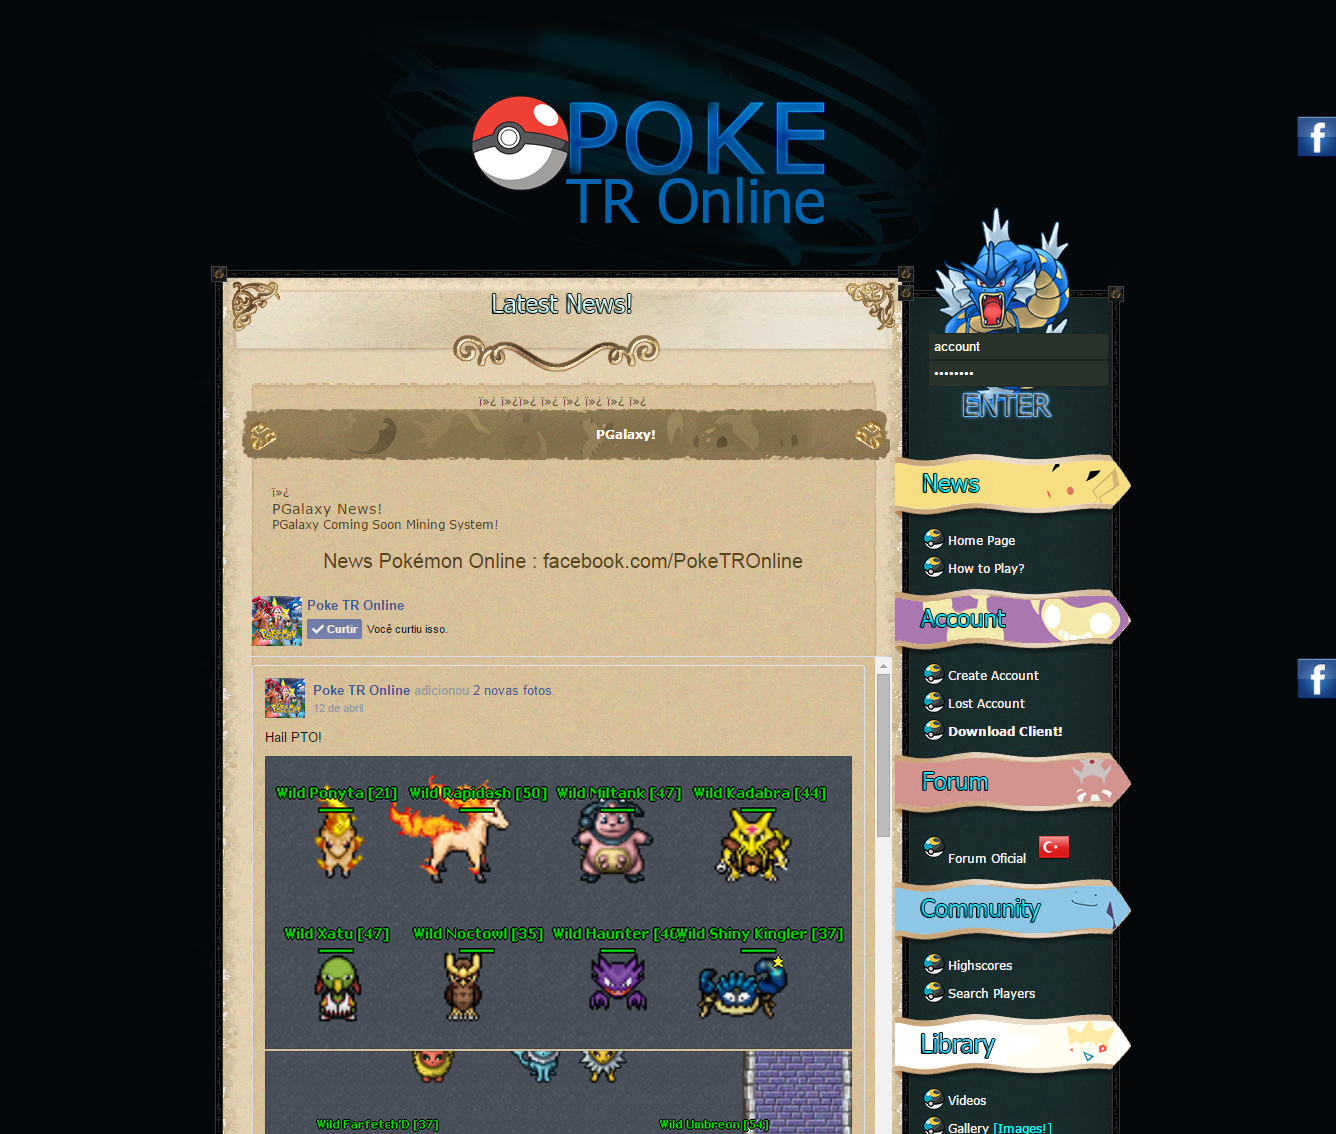  Pokémon Force Online [Türk Yapımı PokéTibia Oyunu] Açıldı!